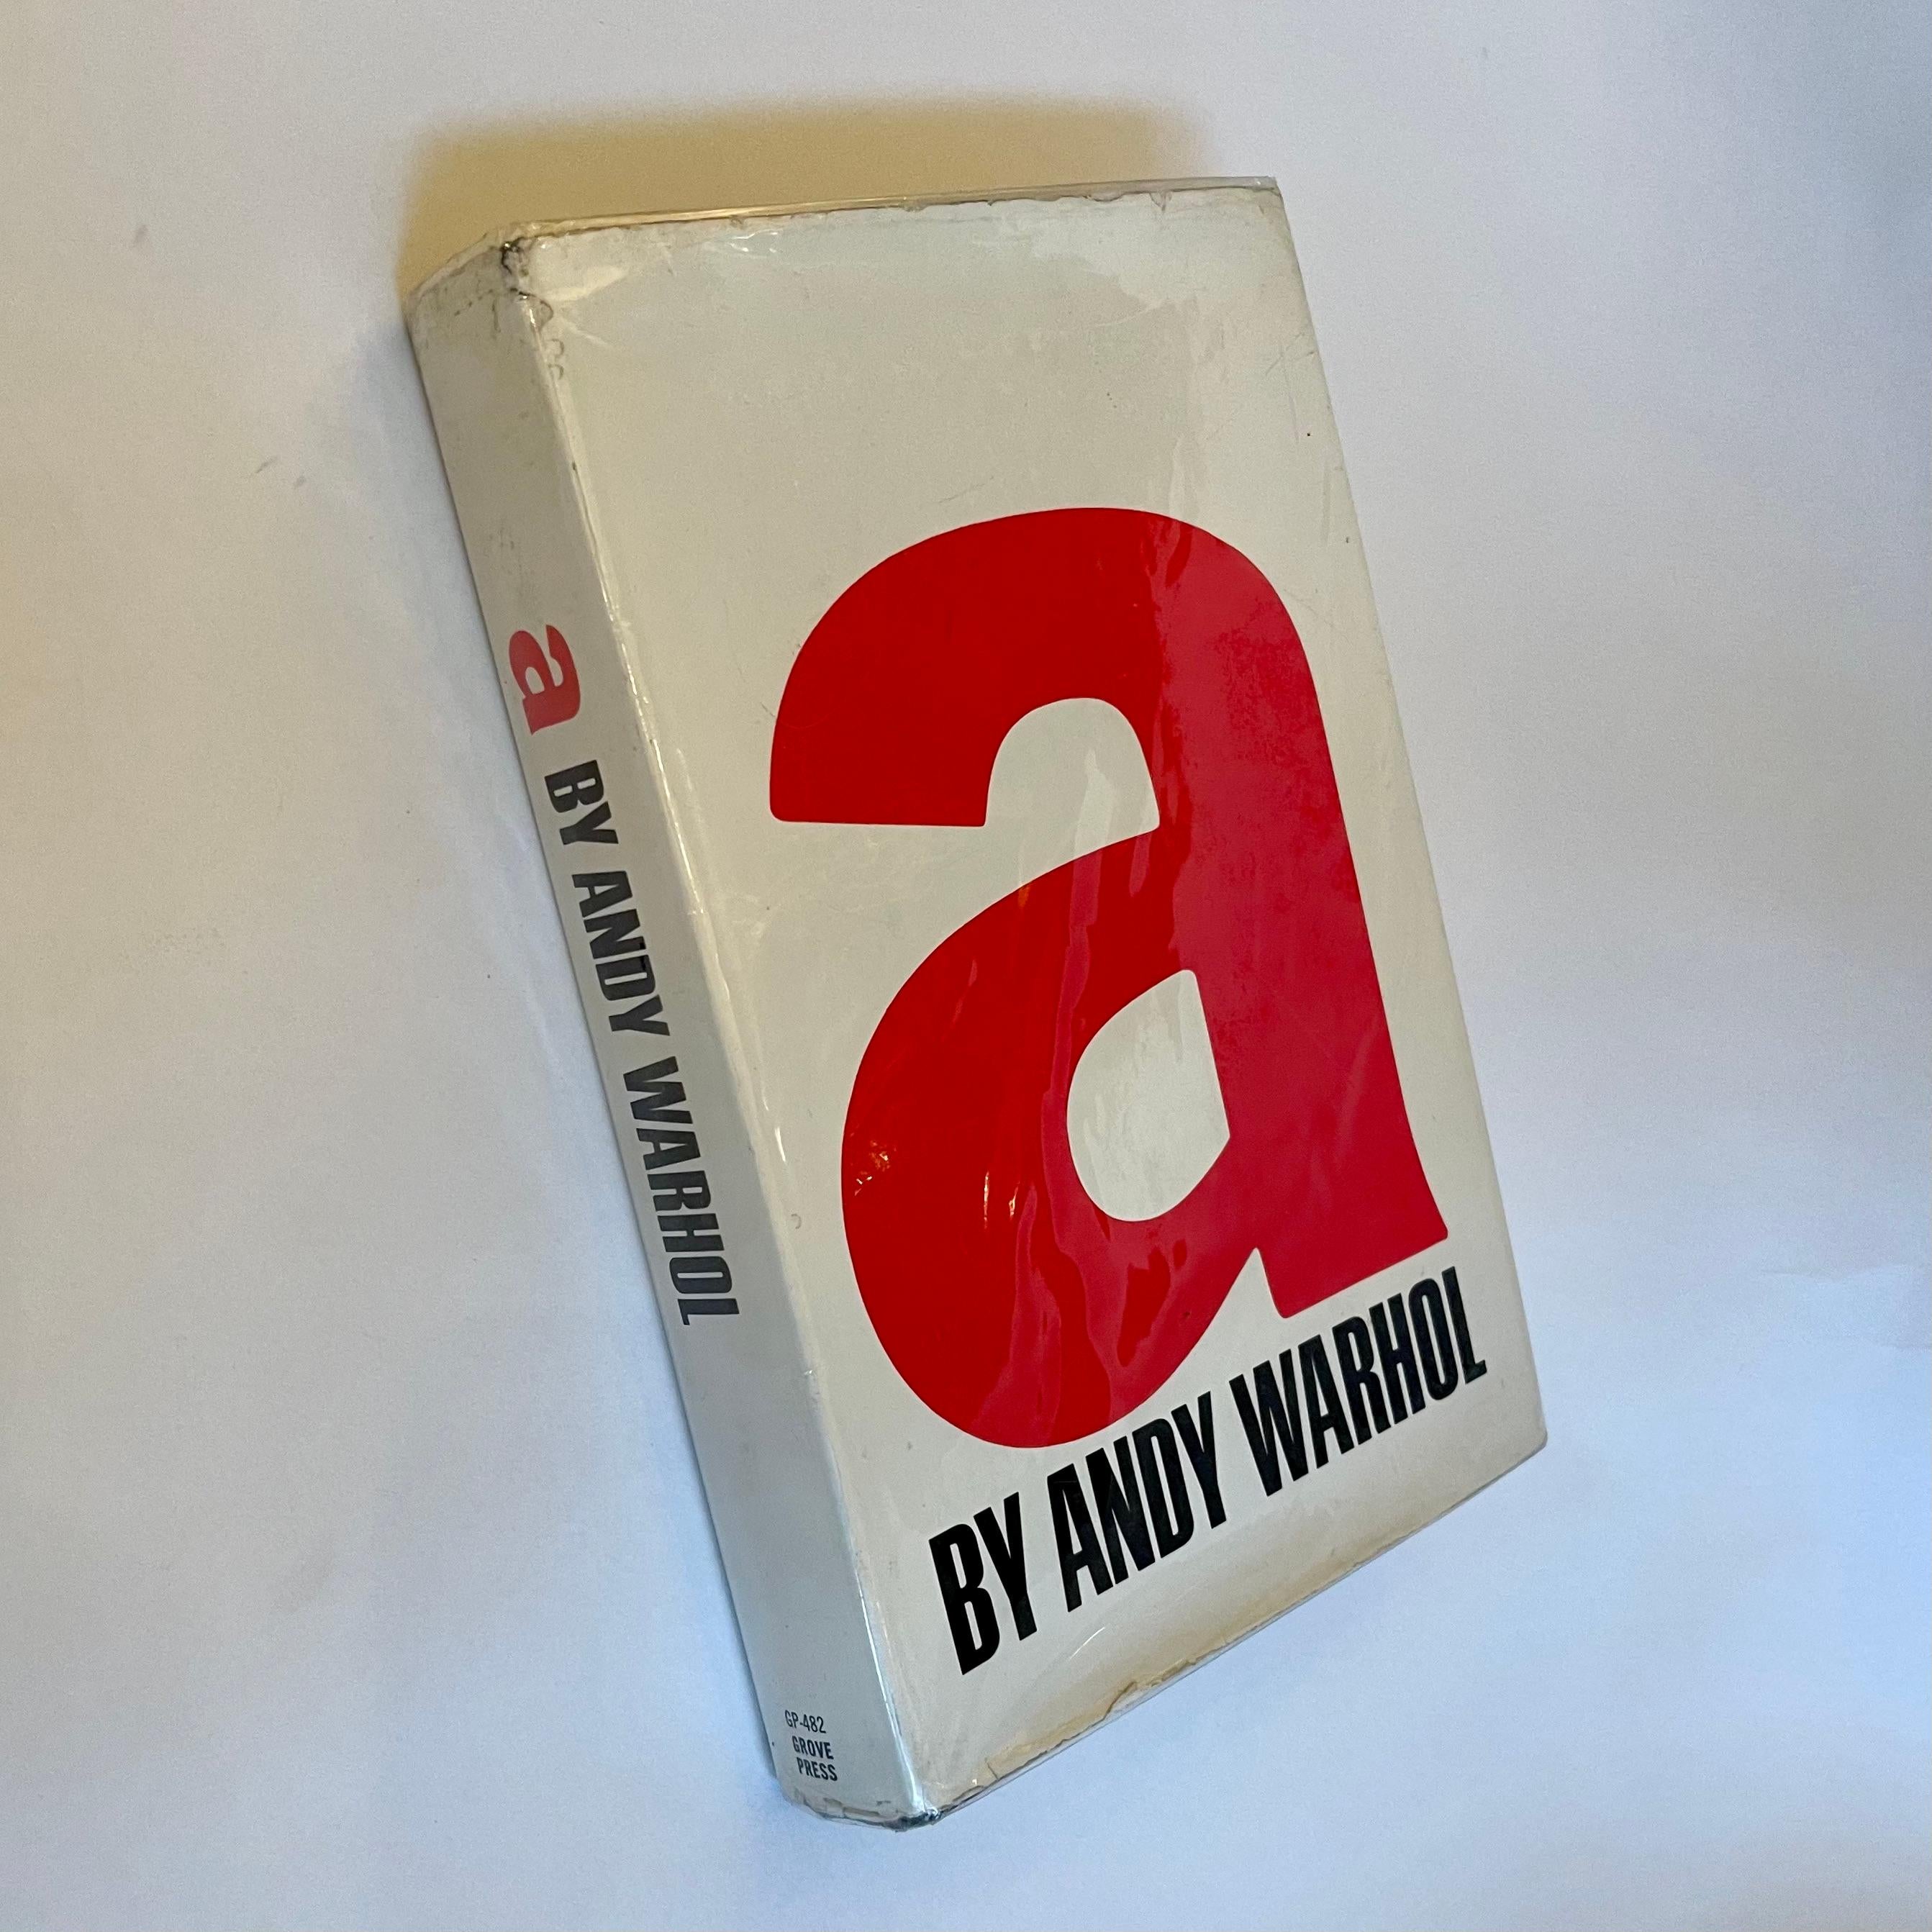 Erste Ausgabe, veröffentlicht von Grove Press, New York, 1968.

Die Erstausgabe und der erste Druck von Andy Warhols experimentellem und avantgardistischem Text 